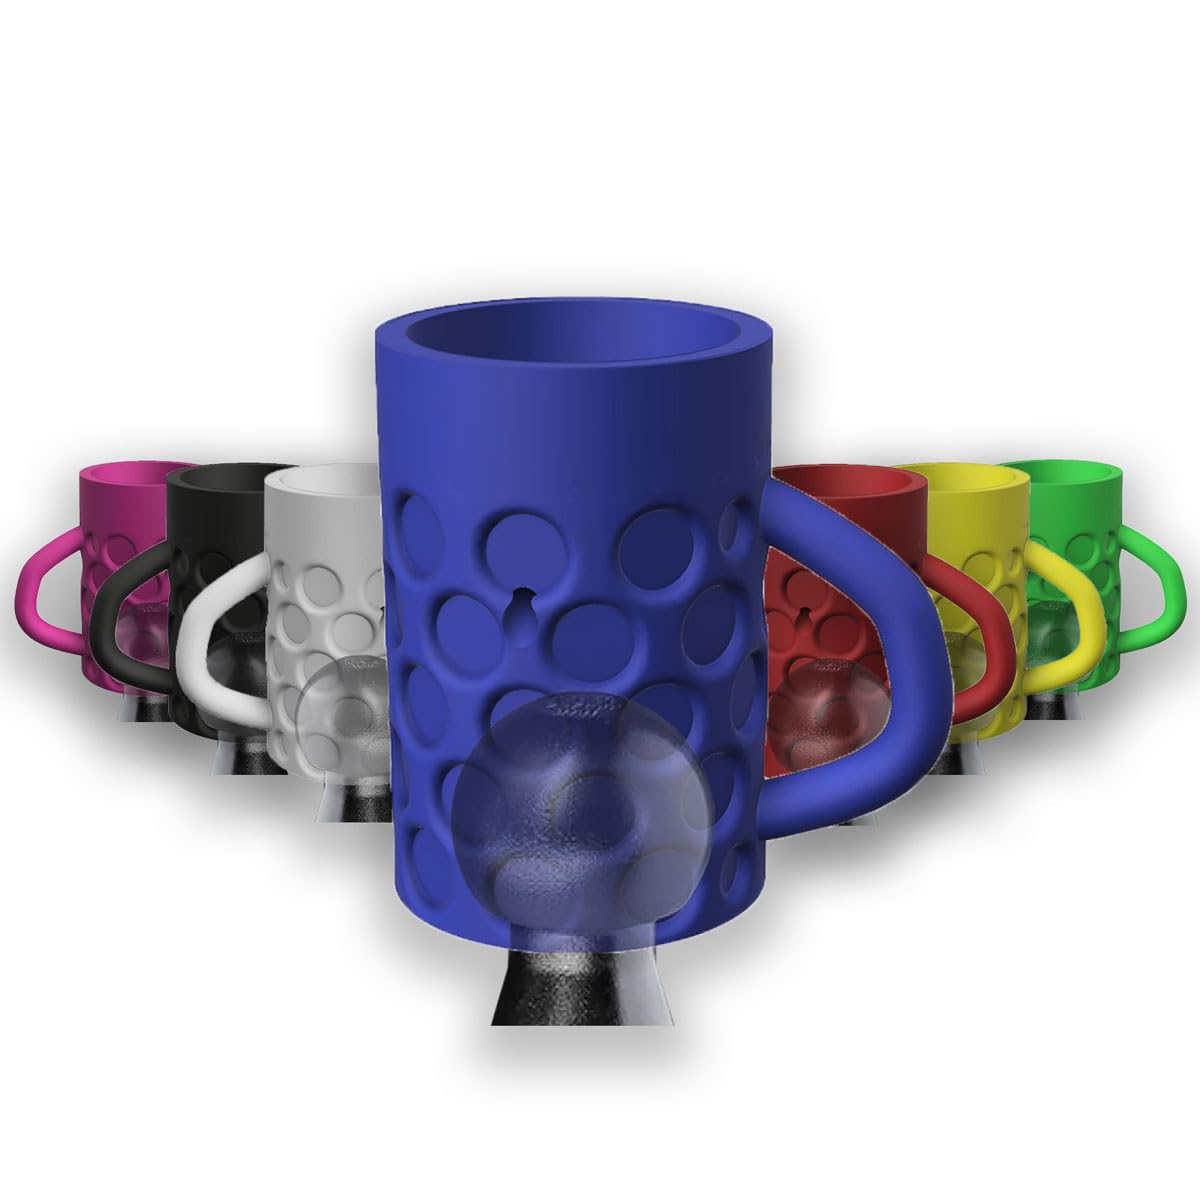 Anhängerkupplung Kappe Bierkrug Abdeckung Lustig - Auswahl aus 7 Farben - AHK Kugelschutz Schutzkappe (Blau) von R-Satz Shop